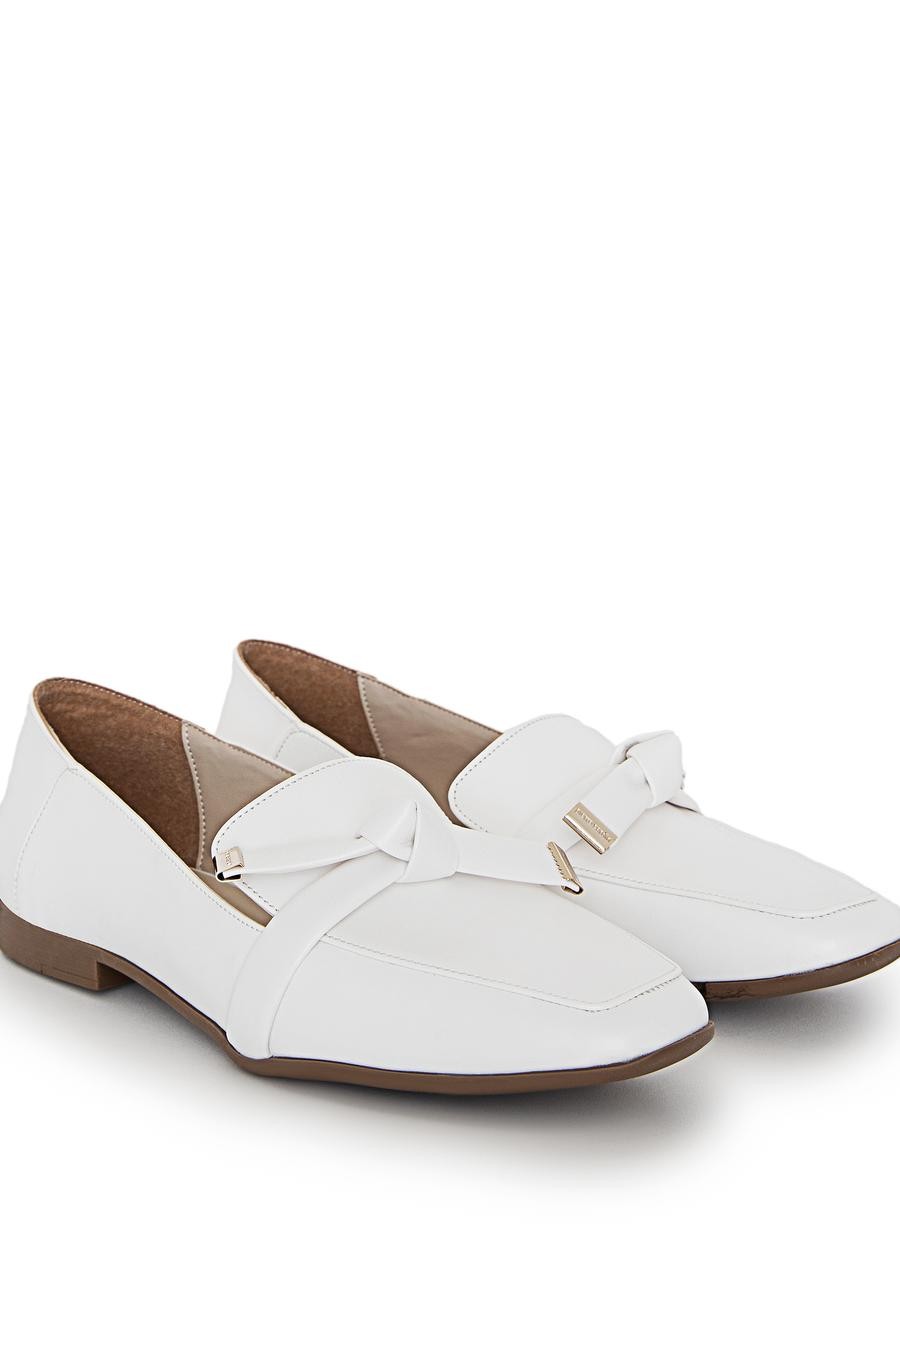 کفش  سفید  استاندارد  زنانه  پیرکاردین